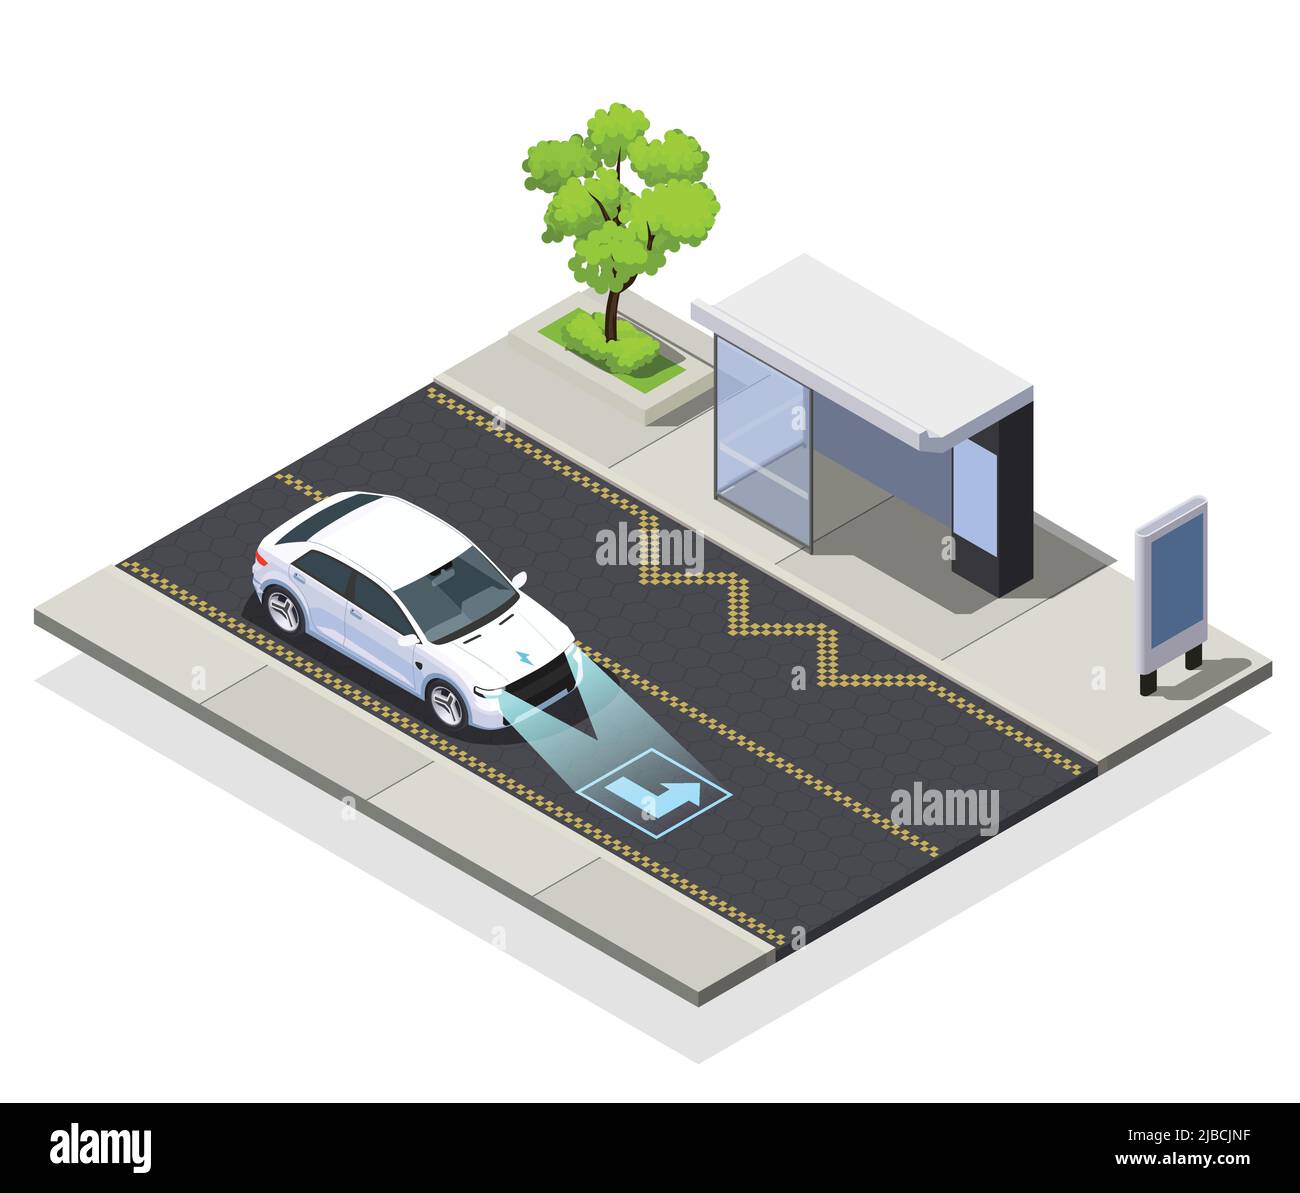 Smart City-Technologien isometrische Zusammensetzung der Straße mit Bushaltestelle und fahrenden Auto mit Scanner-Vektor-Illustration ausgestattet Stock Vektor